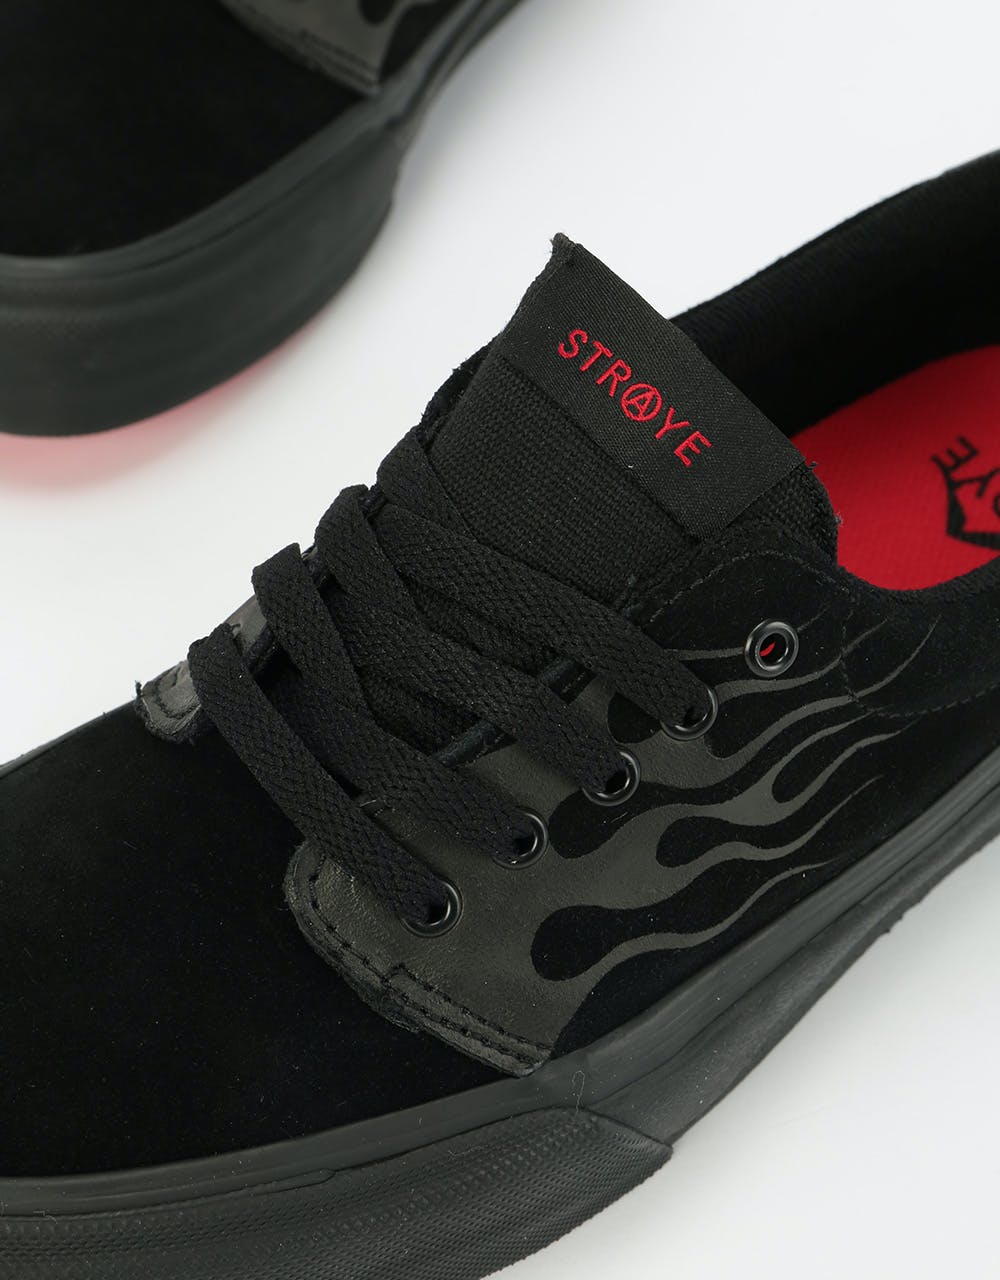 Straye Fairfax Skate Shoes - Black Flame